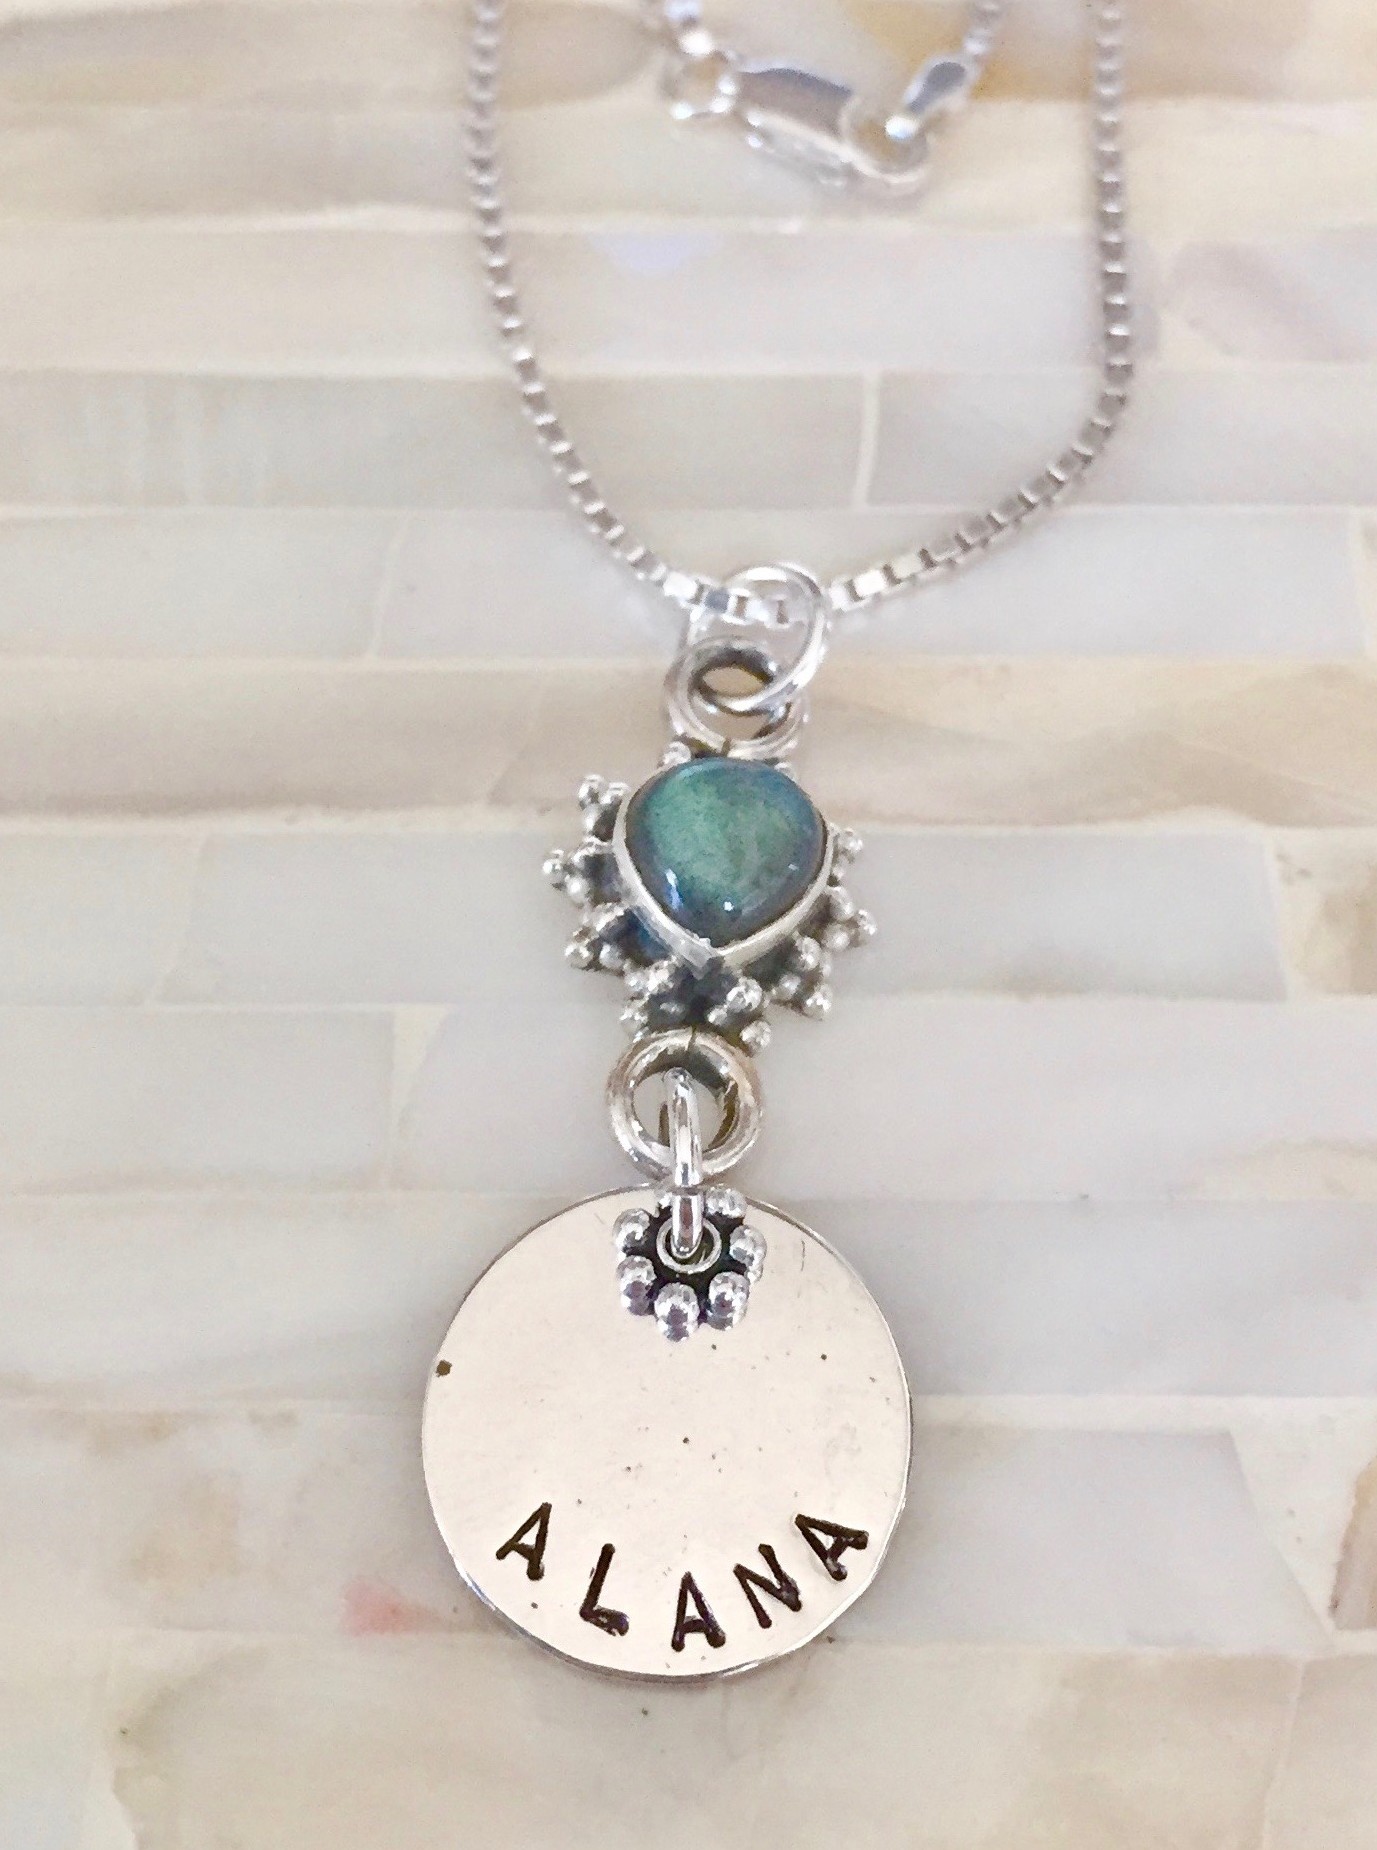 Personalized Gemstone Name Necklace- Moonstone gemstone